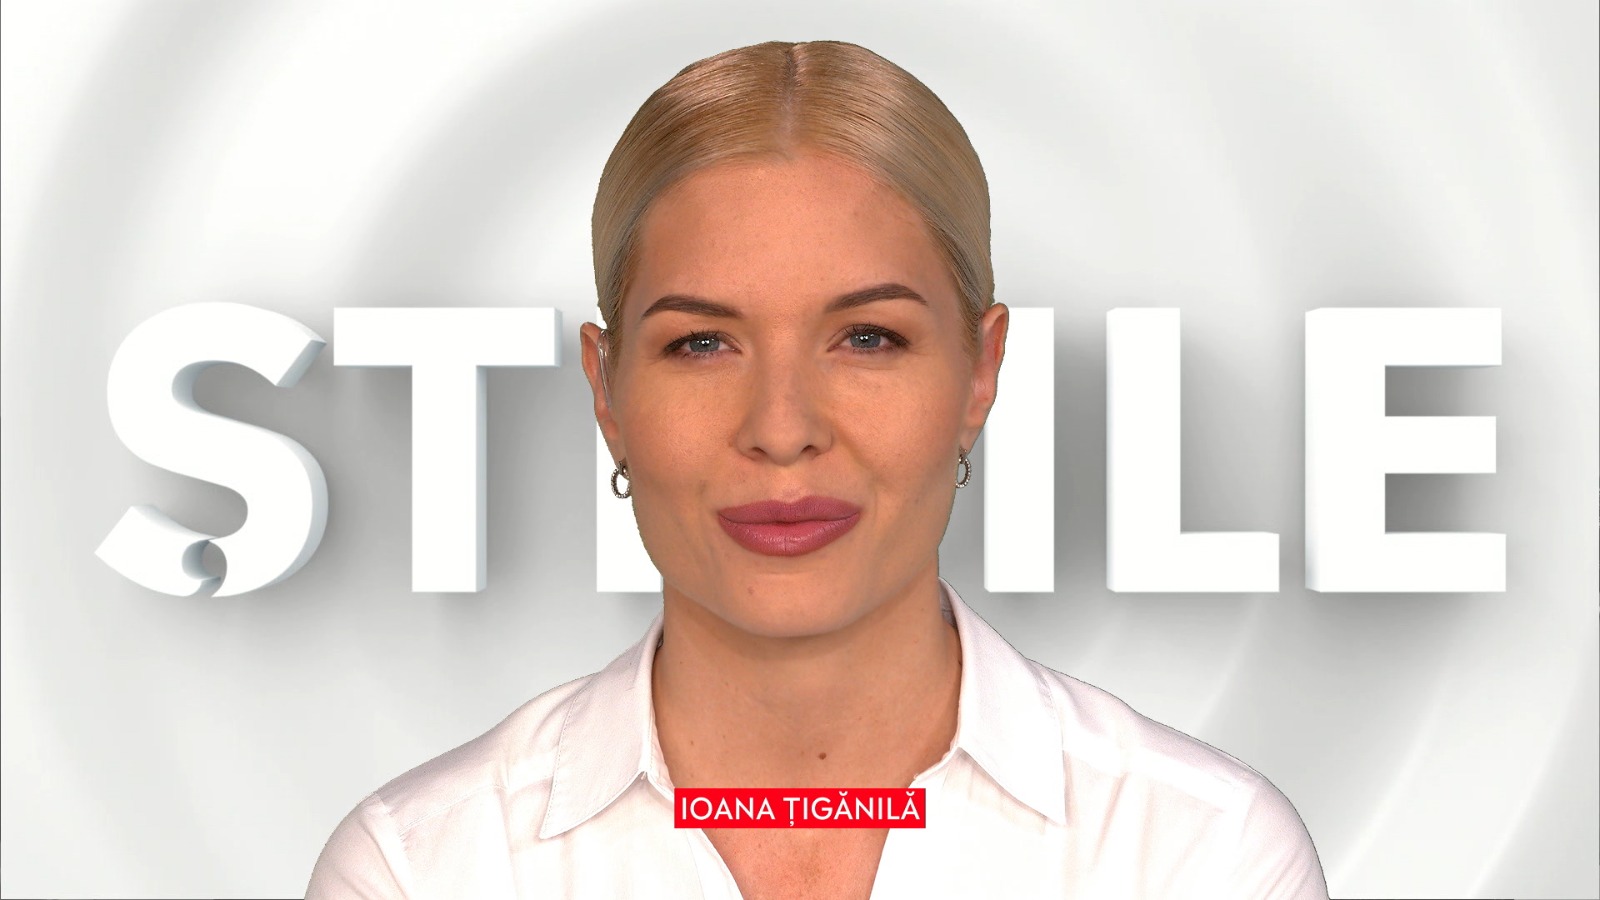 Știrile de la ora 19:00, prezentate de Ioana Țigănilă, 11 octombrie 2020